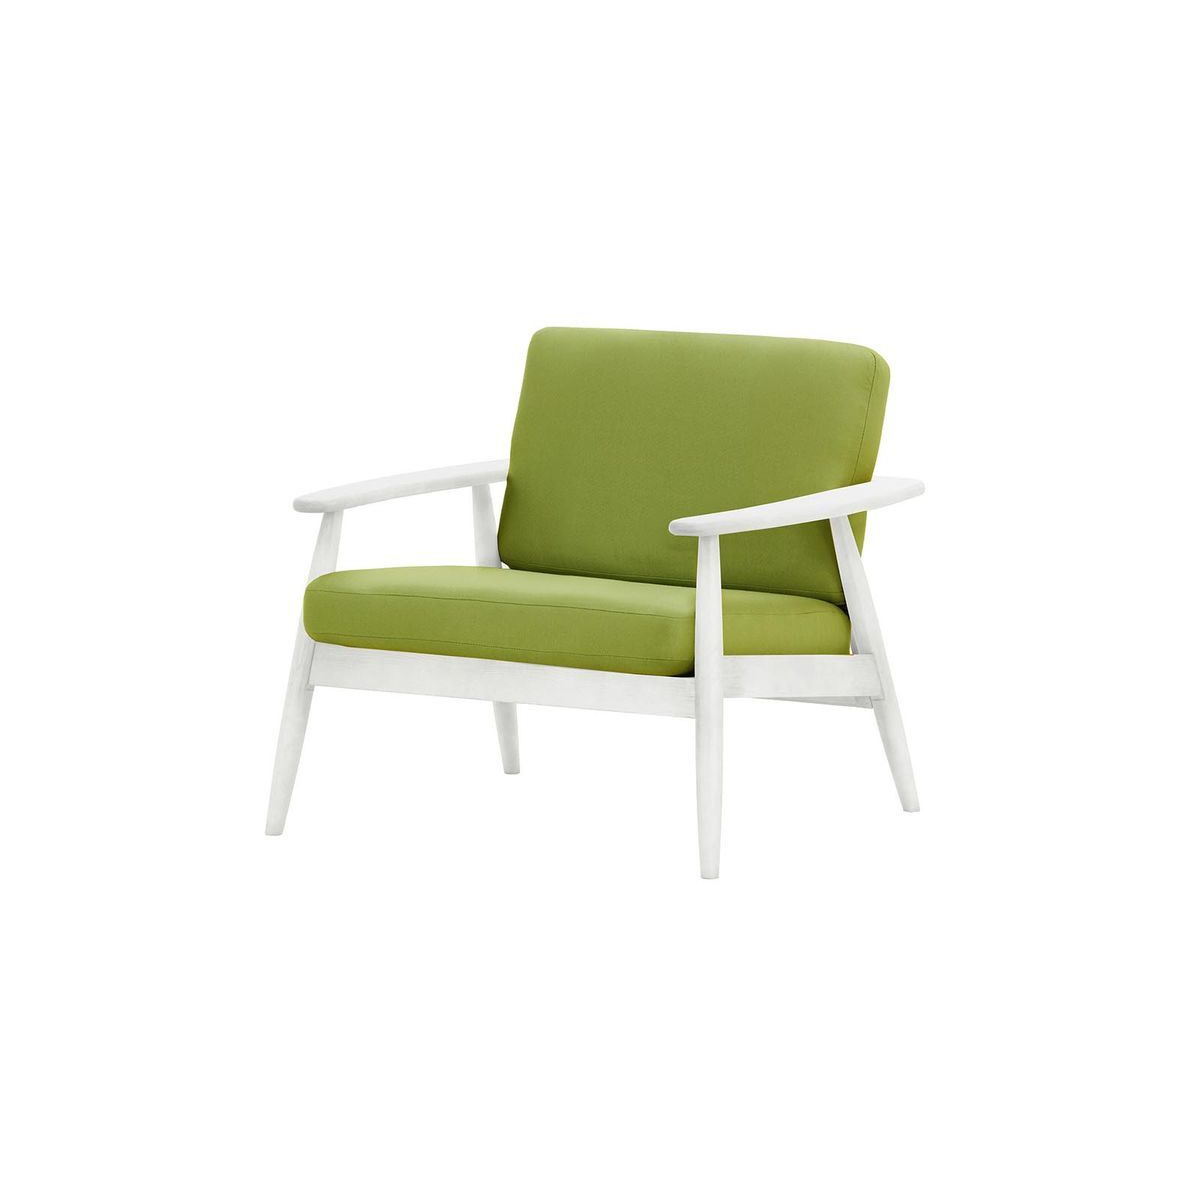 Demure Aqua Garden Armchair, green, Leg colour: 8035 white - image 1